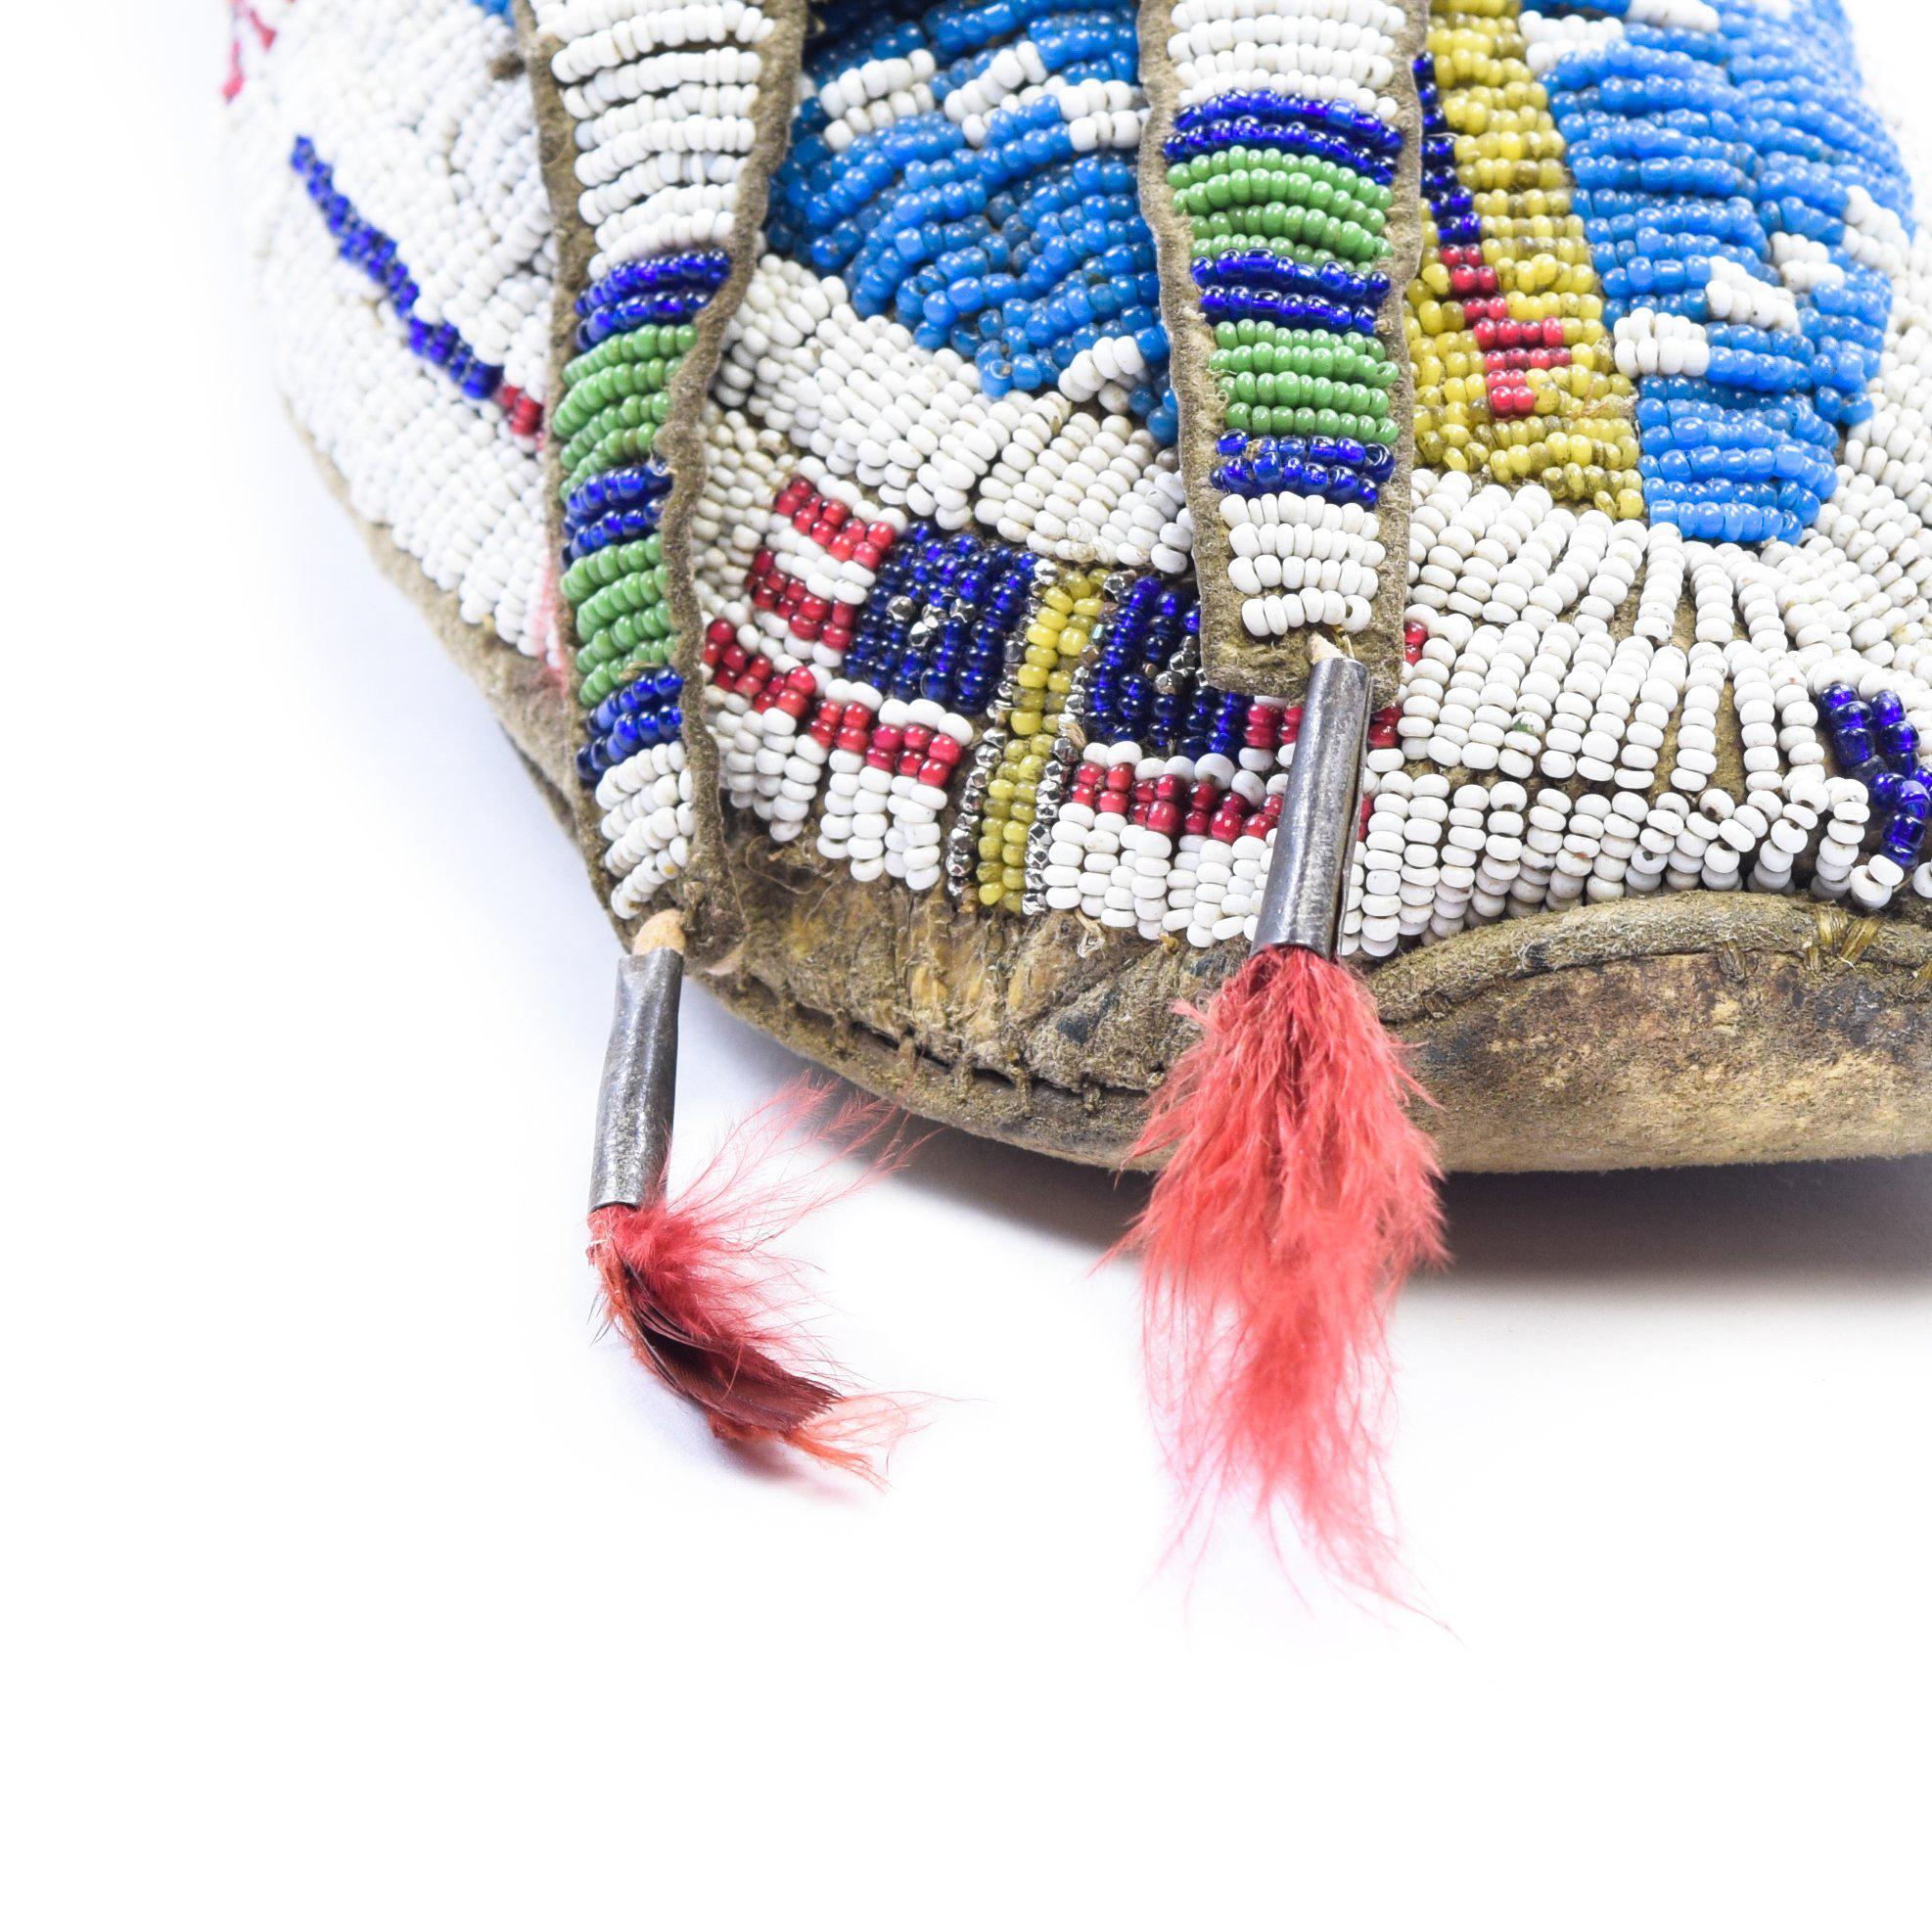 Wunderschöne Sioux-Mokassins, mit Perlen besetzt, hauptsächlich in Blau und Weiß, mit Flaggenmotiv und Pferdehaar-Tuffs auf den Laschen.

Zeitraum: um 1880

Herkunft: Sioux, Prärie

Größe: 10 3/4